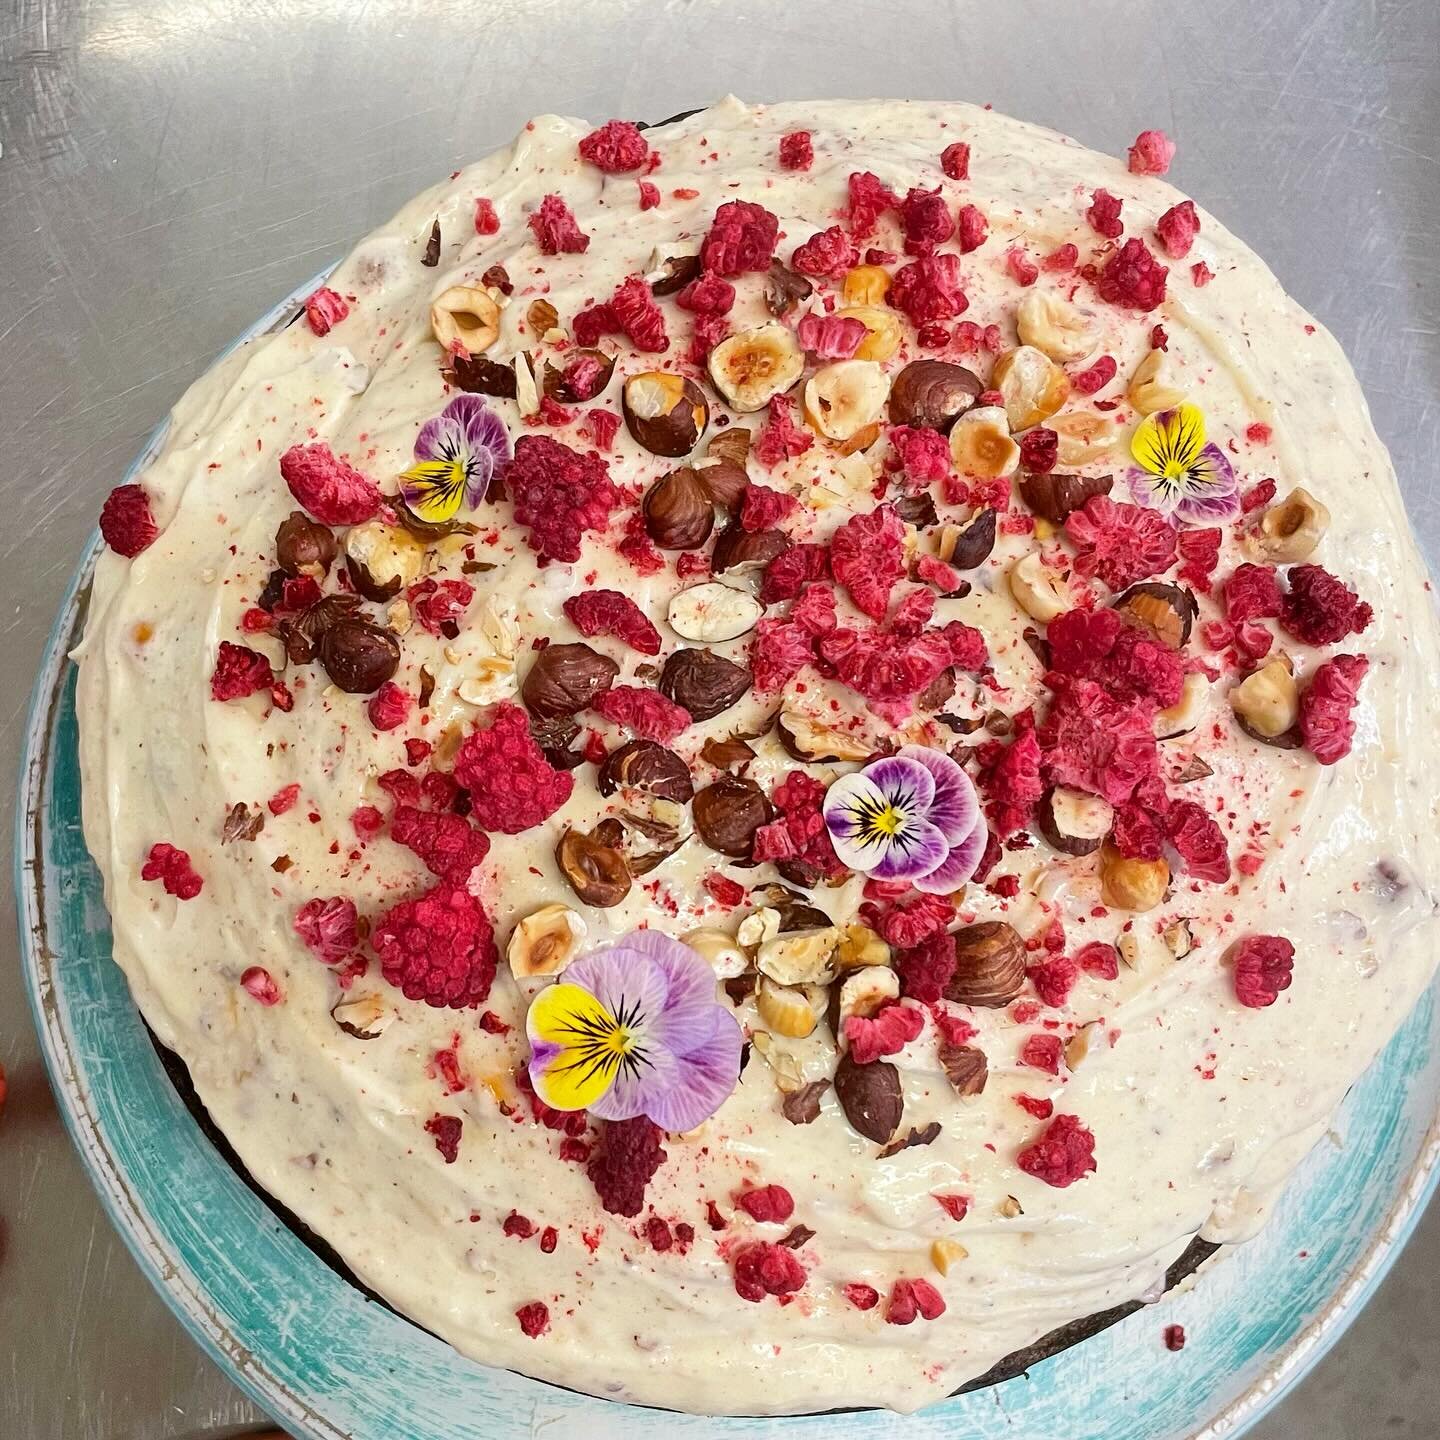 Freshly baked Raspberry Blueberry Cake with Hazelnut Mascarpone 😍😍 #floraontenth